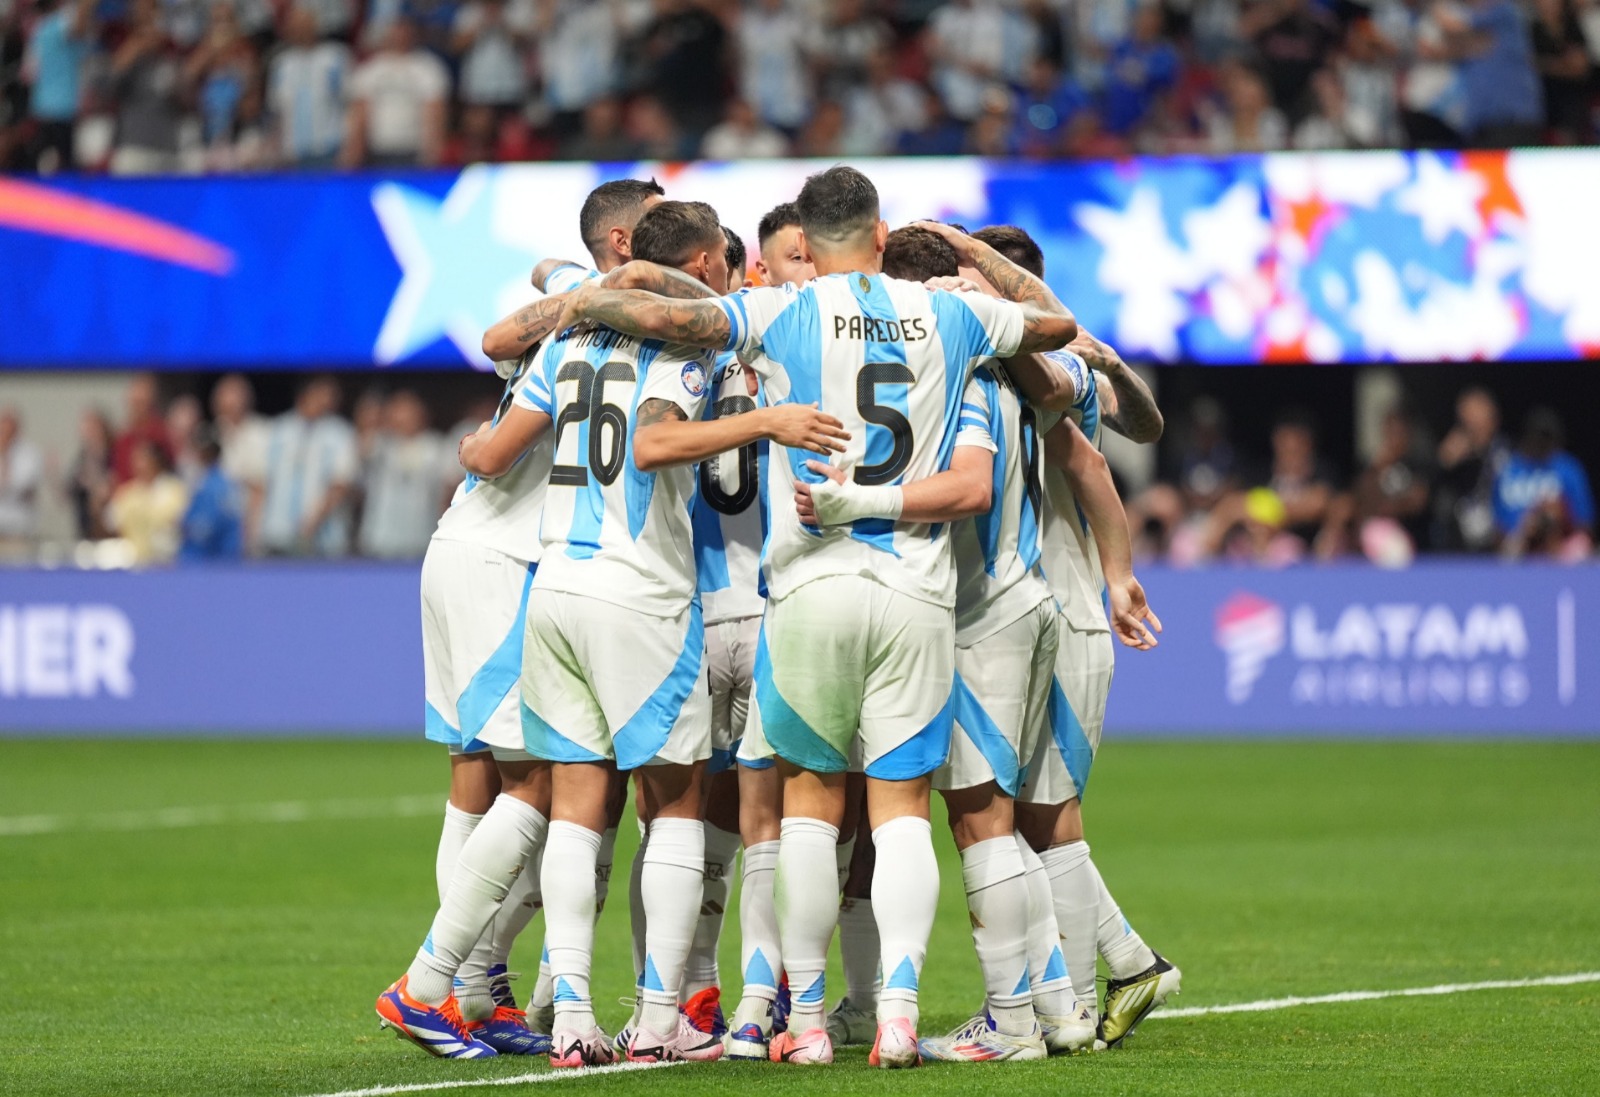 La Selección argentina arrancó la defensa del título con un triunfo ante un duro escollo como se presentó Canadá.